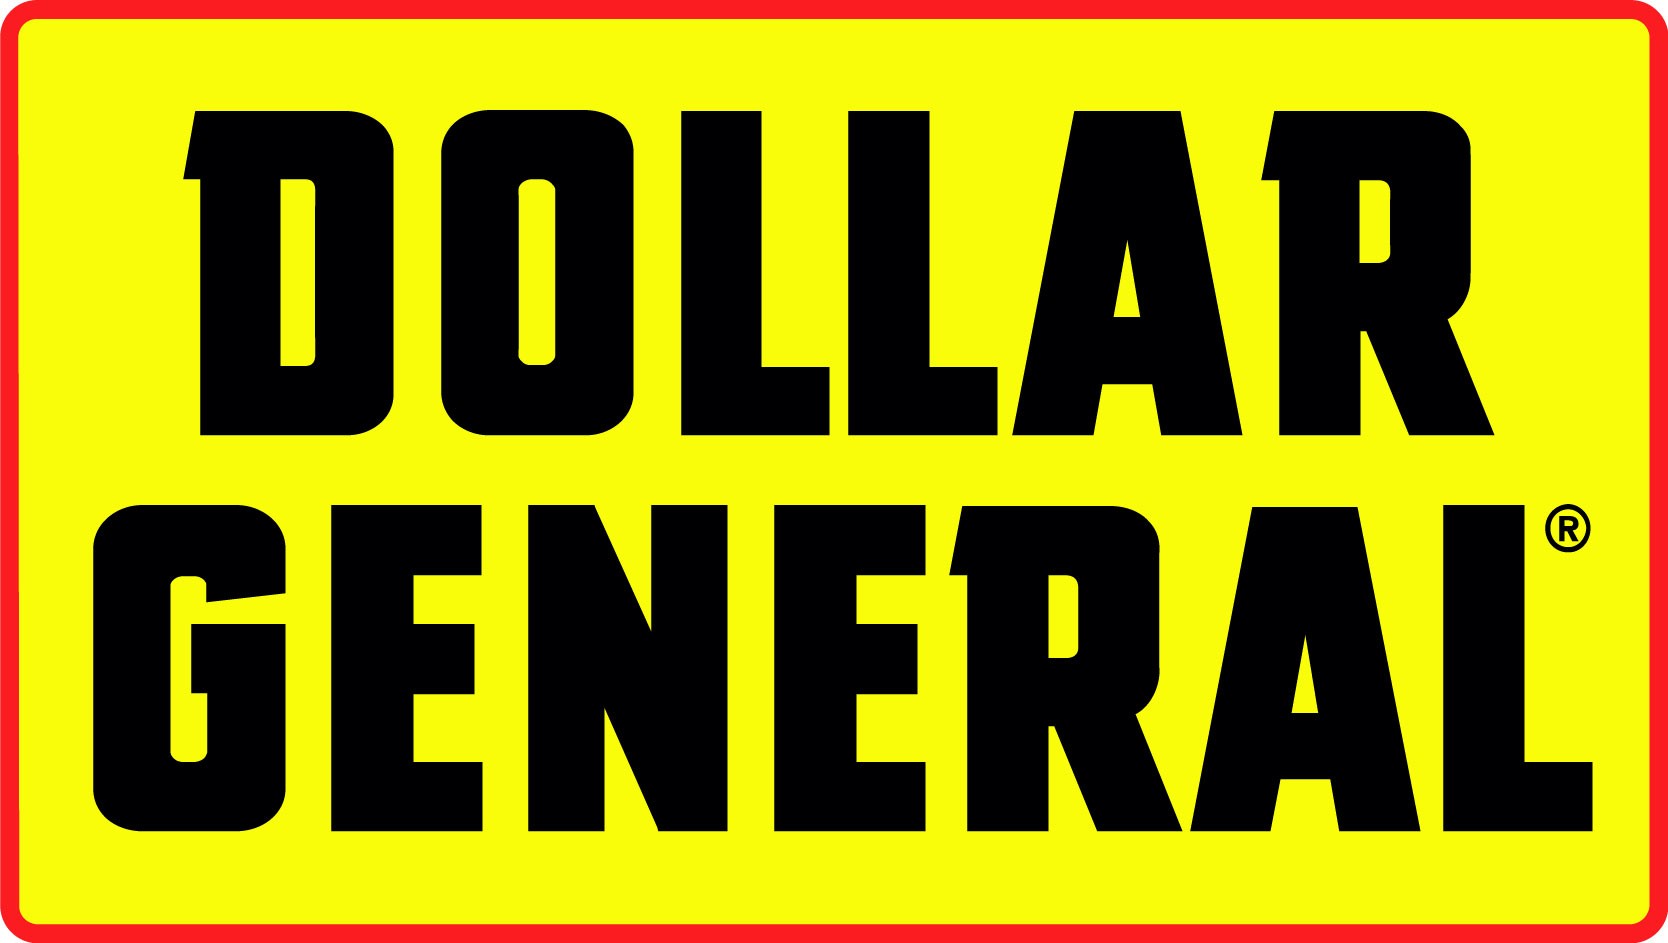 Dollar General Return Policy